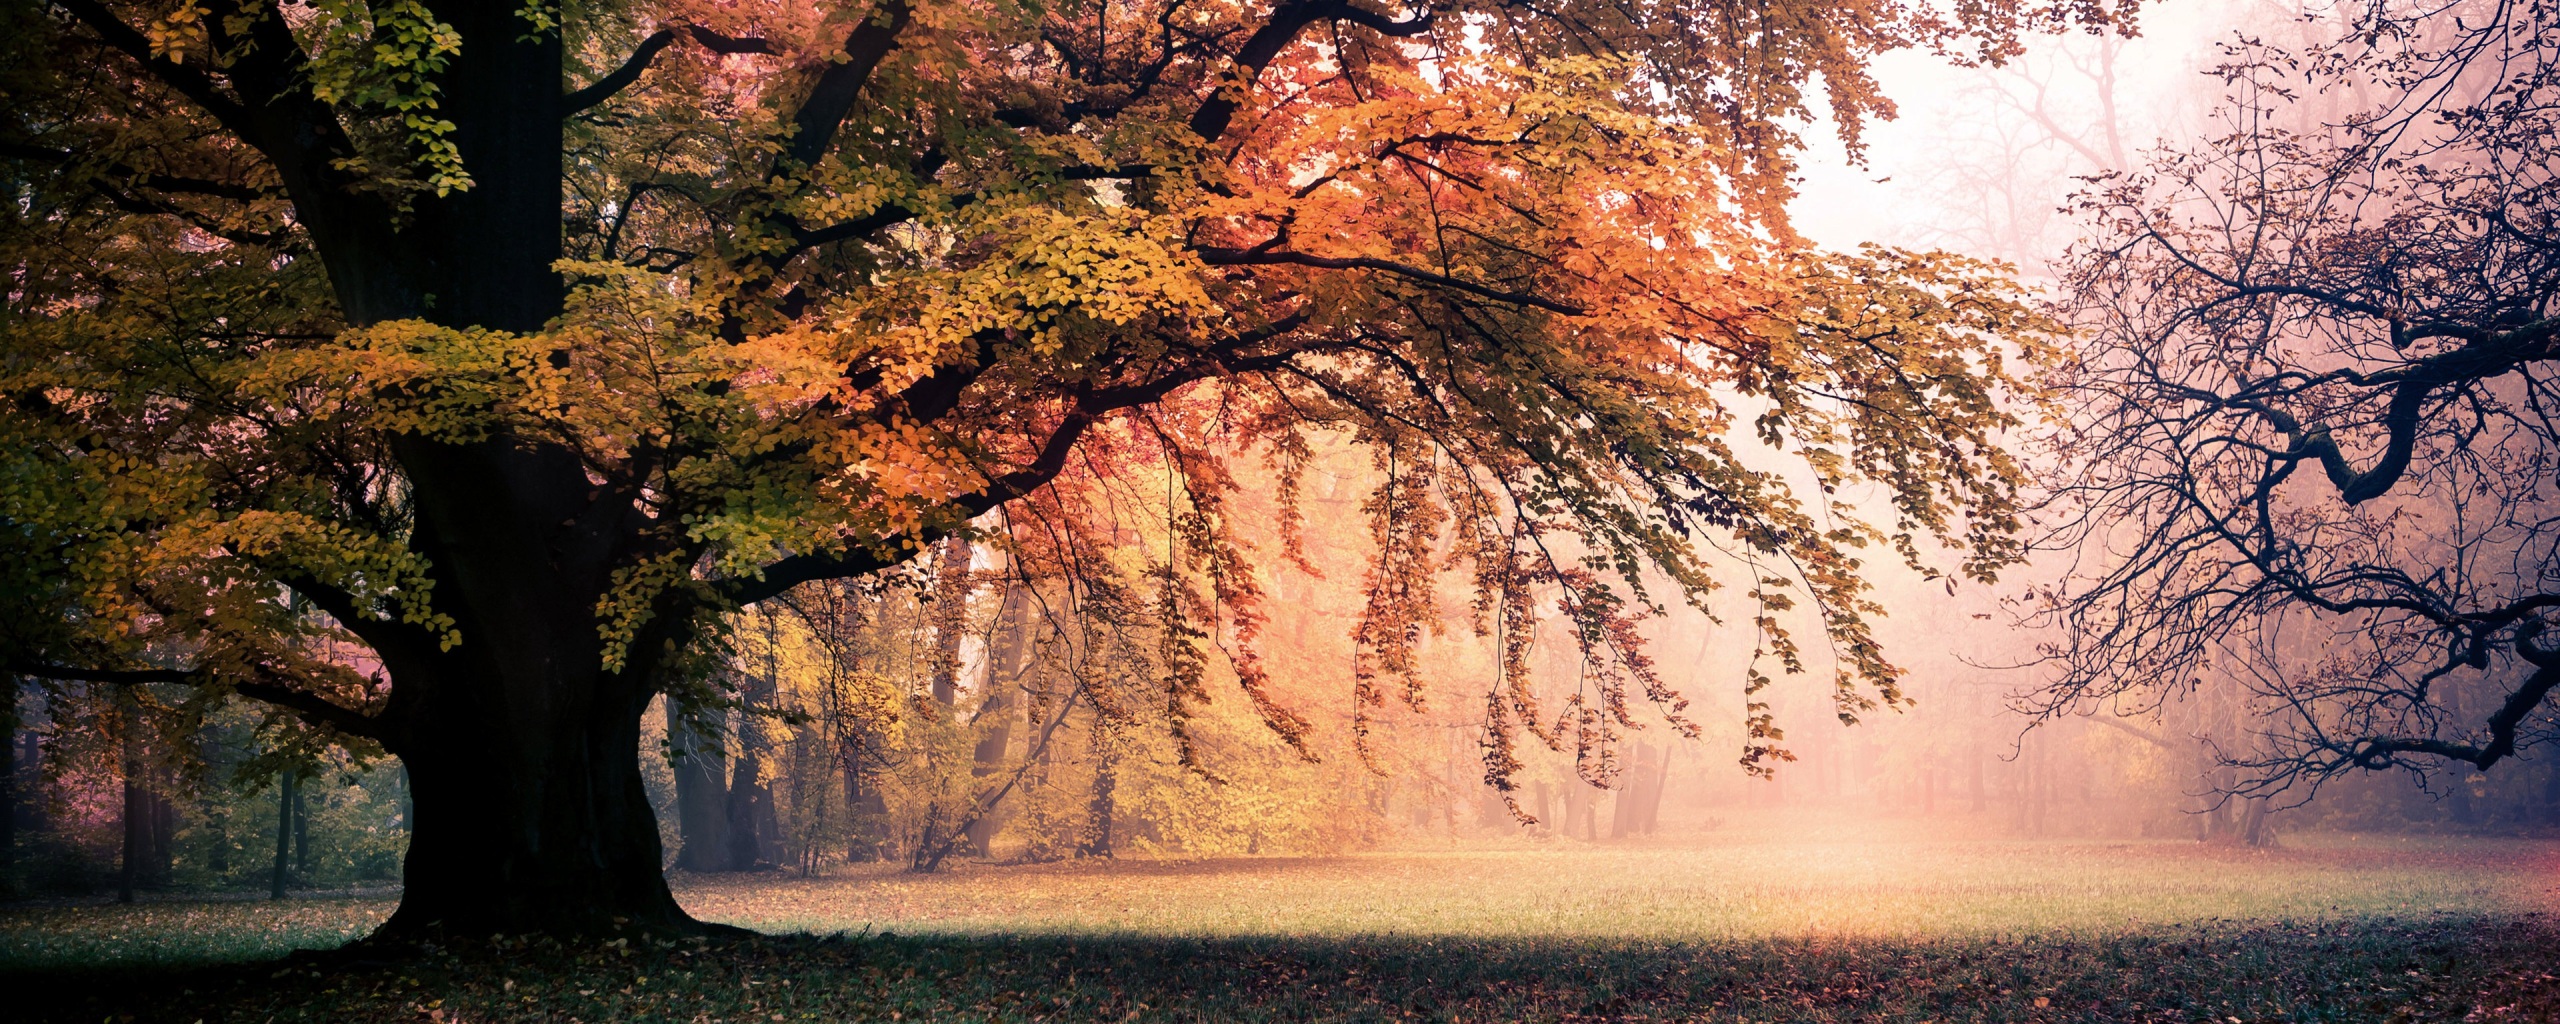 Hình nền cây lá rụng: Cùng hòa mình với mùa thu với hình nền cây lá rụng tuyệt đẹp. Bạn sẽ được khám phá những màu sắc đa dạng từ xanh đến vàng, màu cam và đỏ của lá đang rơi xuống đất.